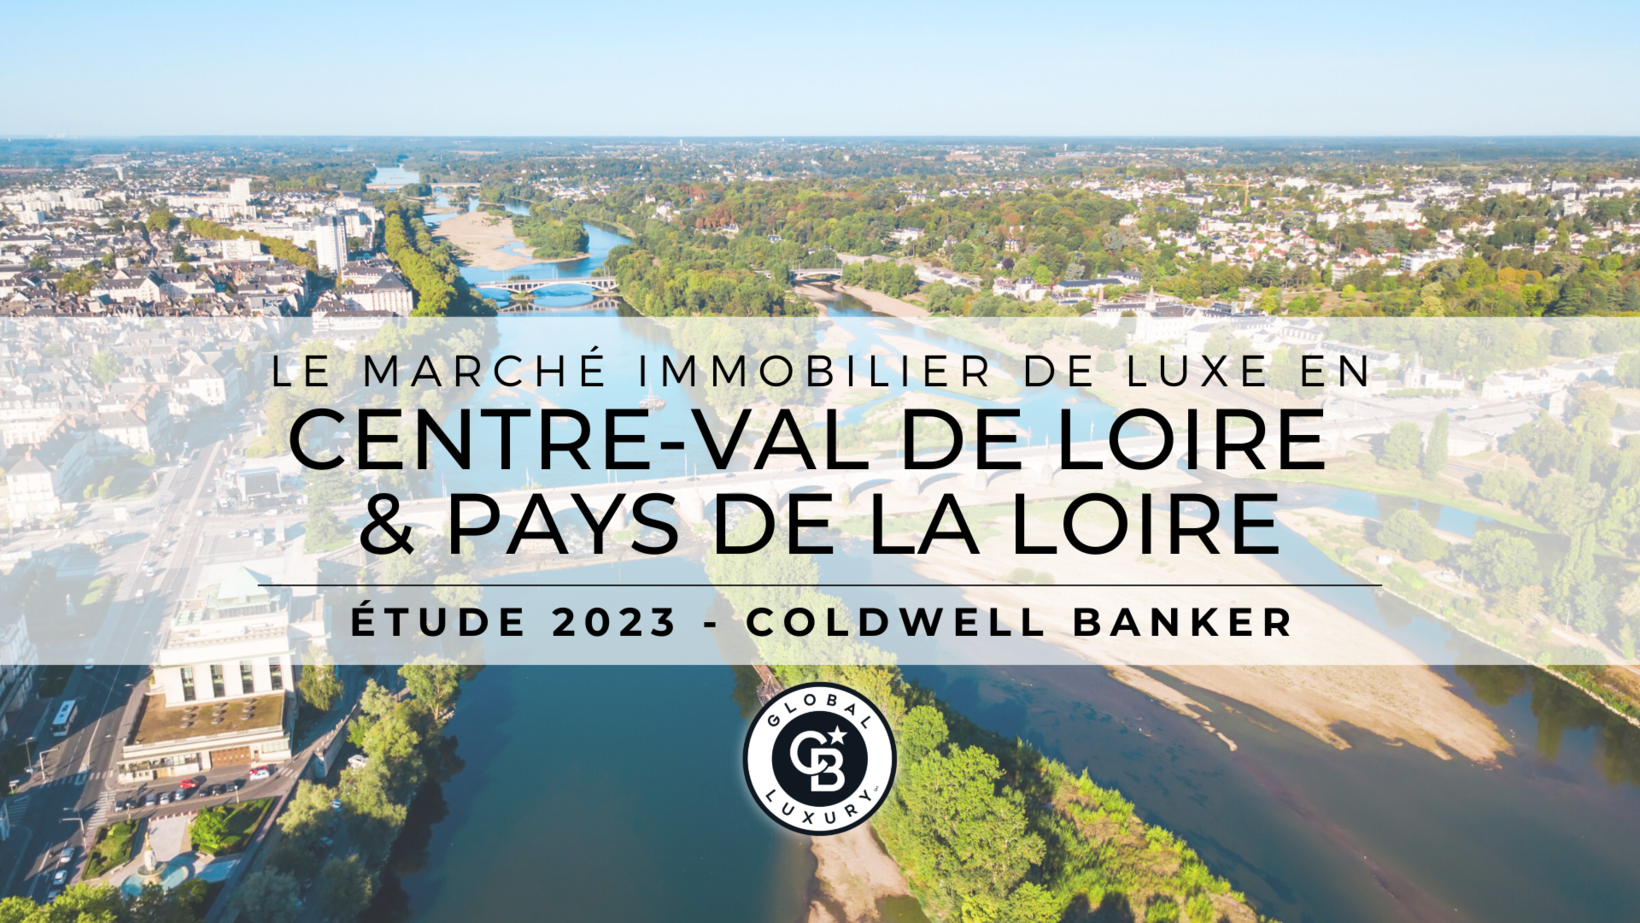 Le marché immobilier de luxe en Centre-Val de Loire et Pays de la Loire en 2022